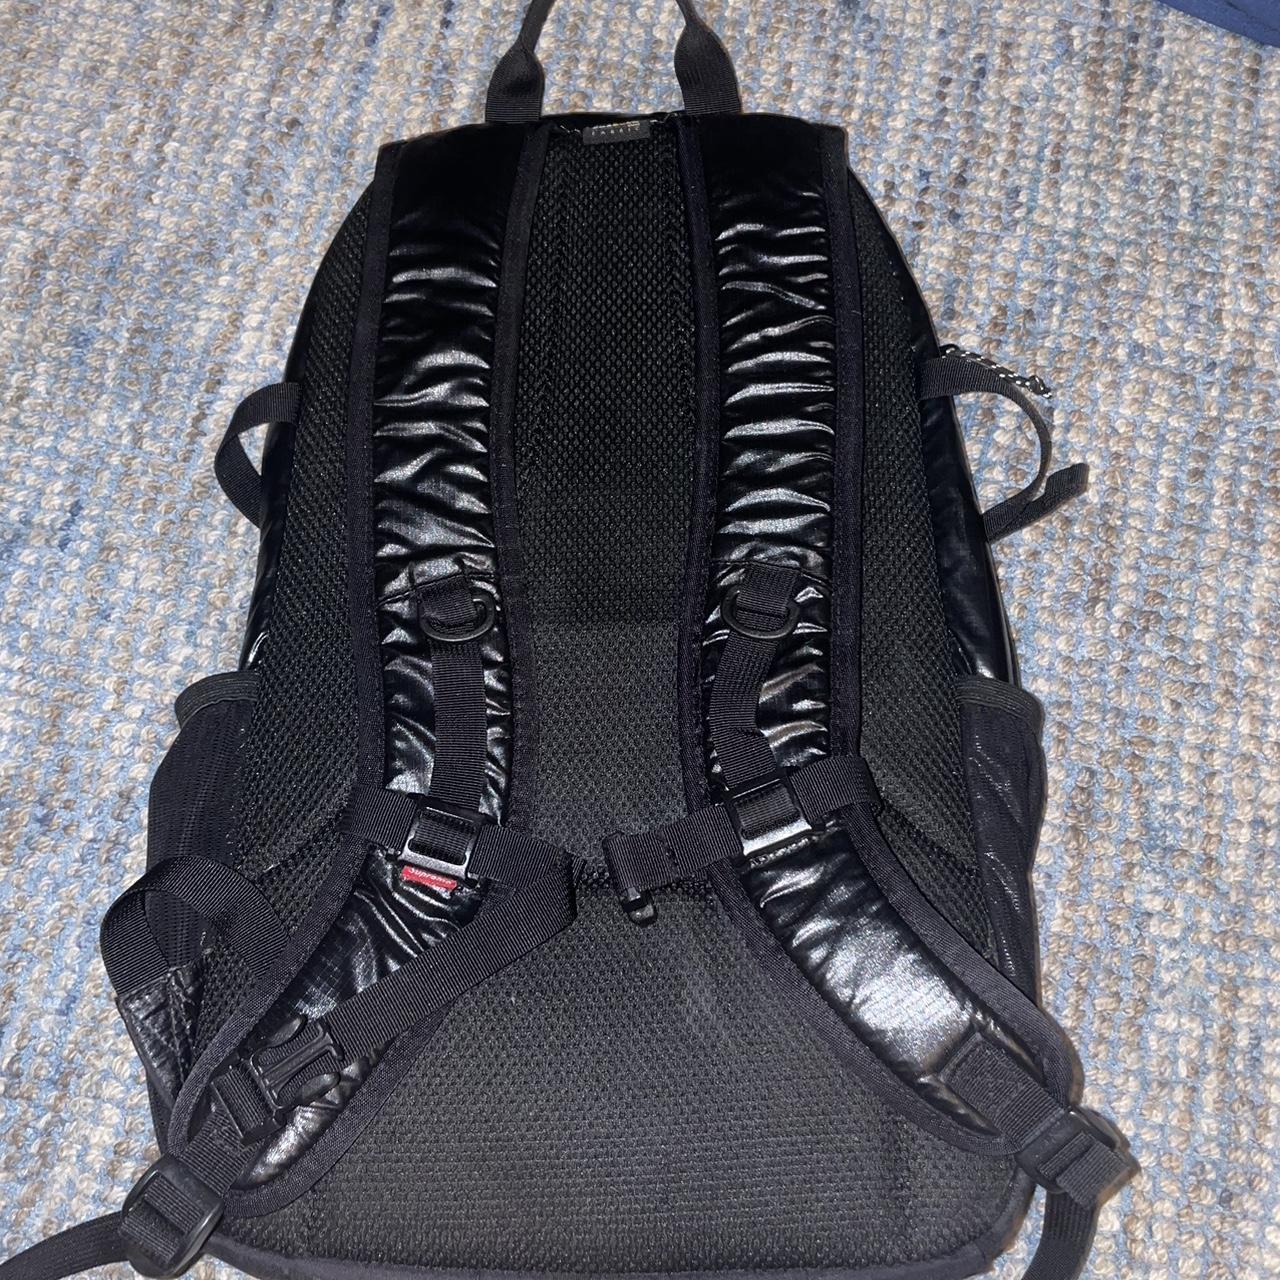 Supreme SS17 Backpack Black